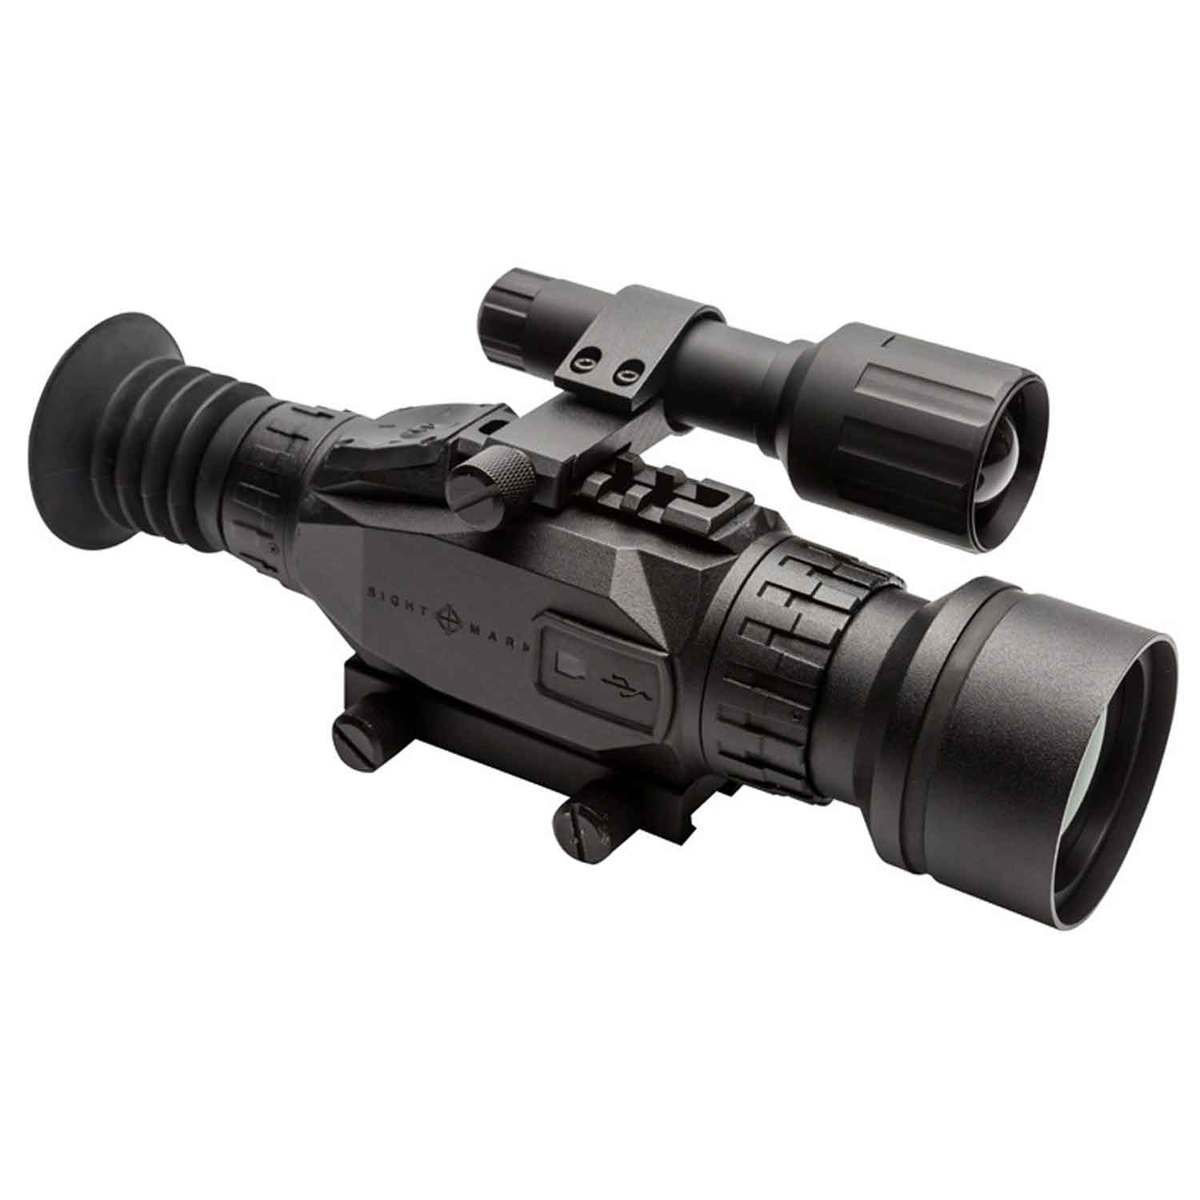 https://www.sportsmans.com/medias/sightmark-wraith-hd-4-32-50mm-digital-night-vision-rifle-scope-1628791-1.jpg?context=bWFzdGVyfGltYWdlc3w1NDI0M3xpbWFnZS9qcGVnfGltYWdlcy9oZDgvaGEyLzk5Mjc0NTc4MDAyMjIuanBnfGE5ZWQ0ZmFjOGJkNzQ4YzhkNDdlYTQ1MTMyZTc4ZDQzN2Y5NjBlZmY1ZjBjNzYxYjA5YThjNmQ4ZjVlNDJlNTY